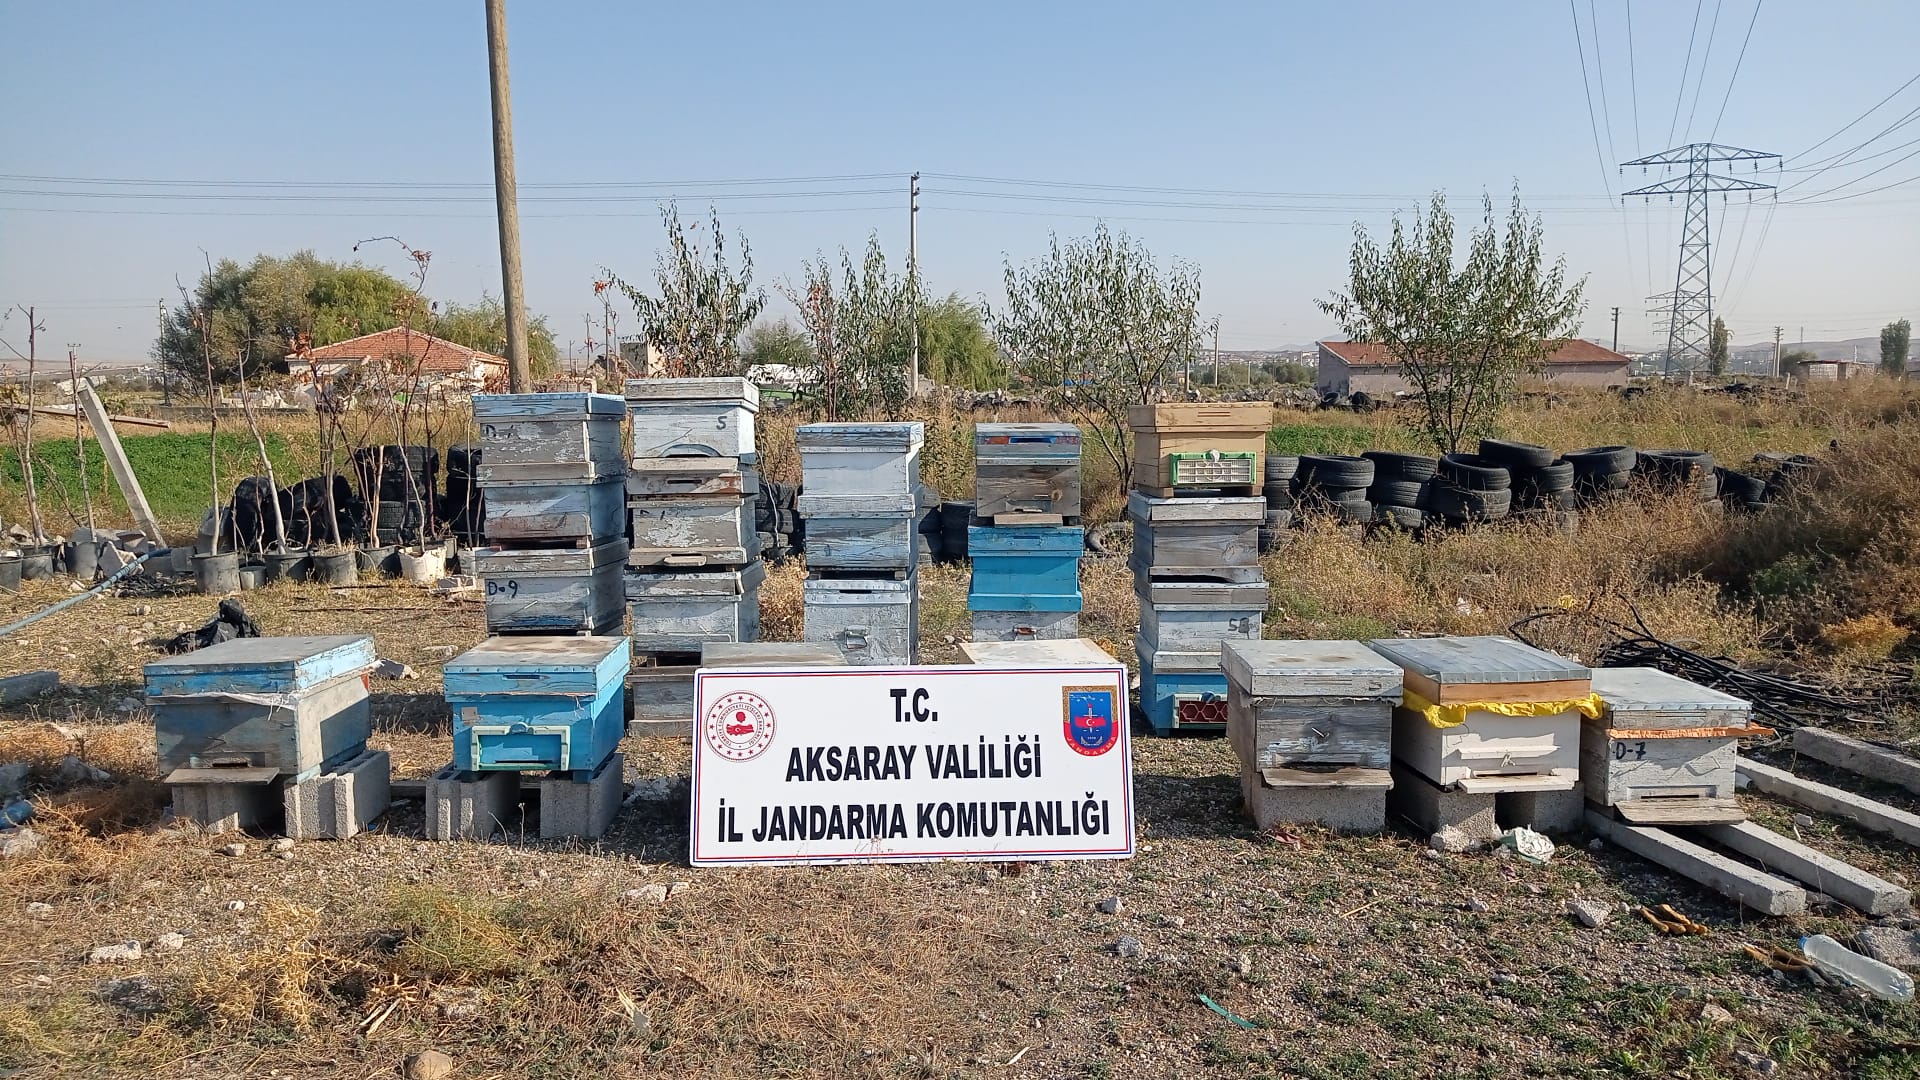 Aksaray’dan 25 adet arı kovanını çalıp Nevşehir’e götürdü